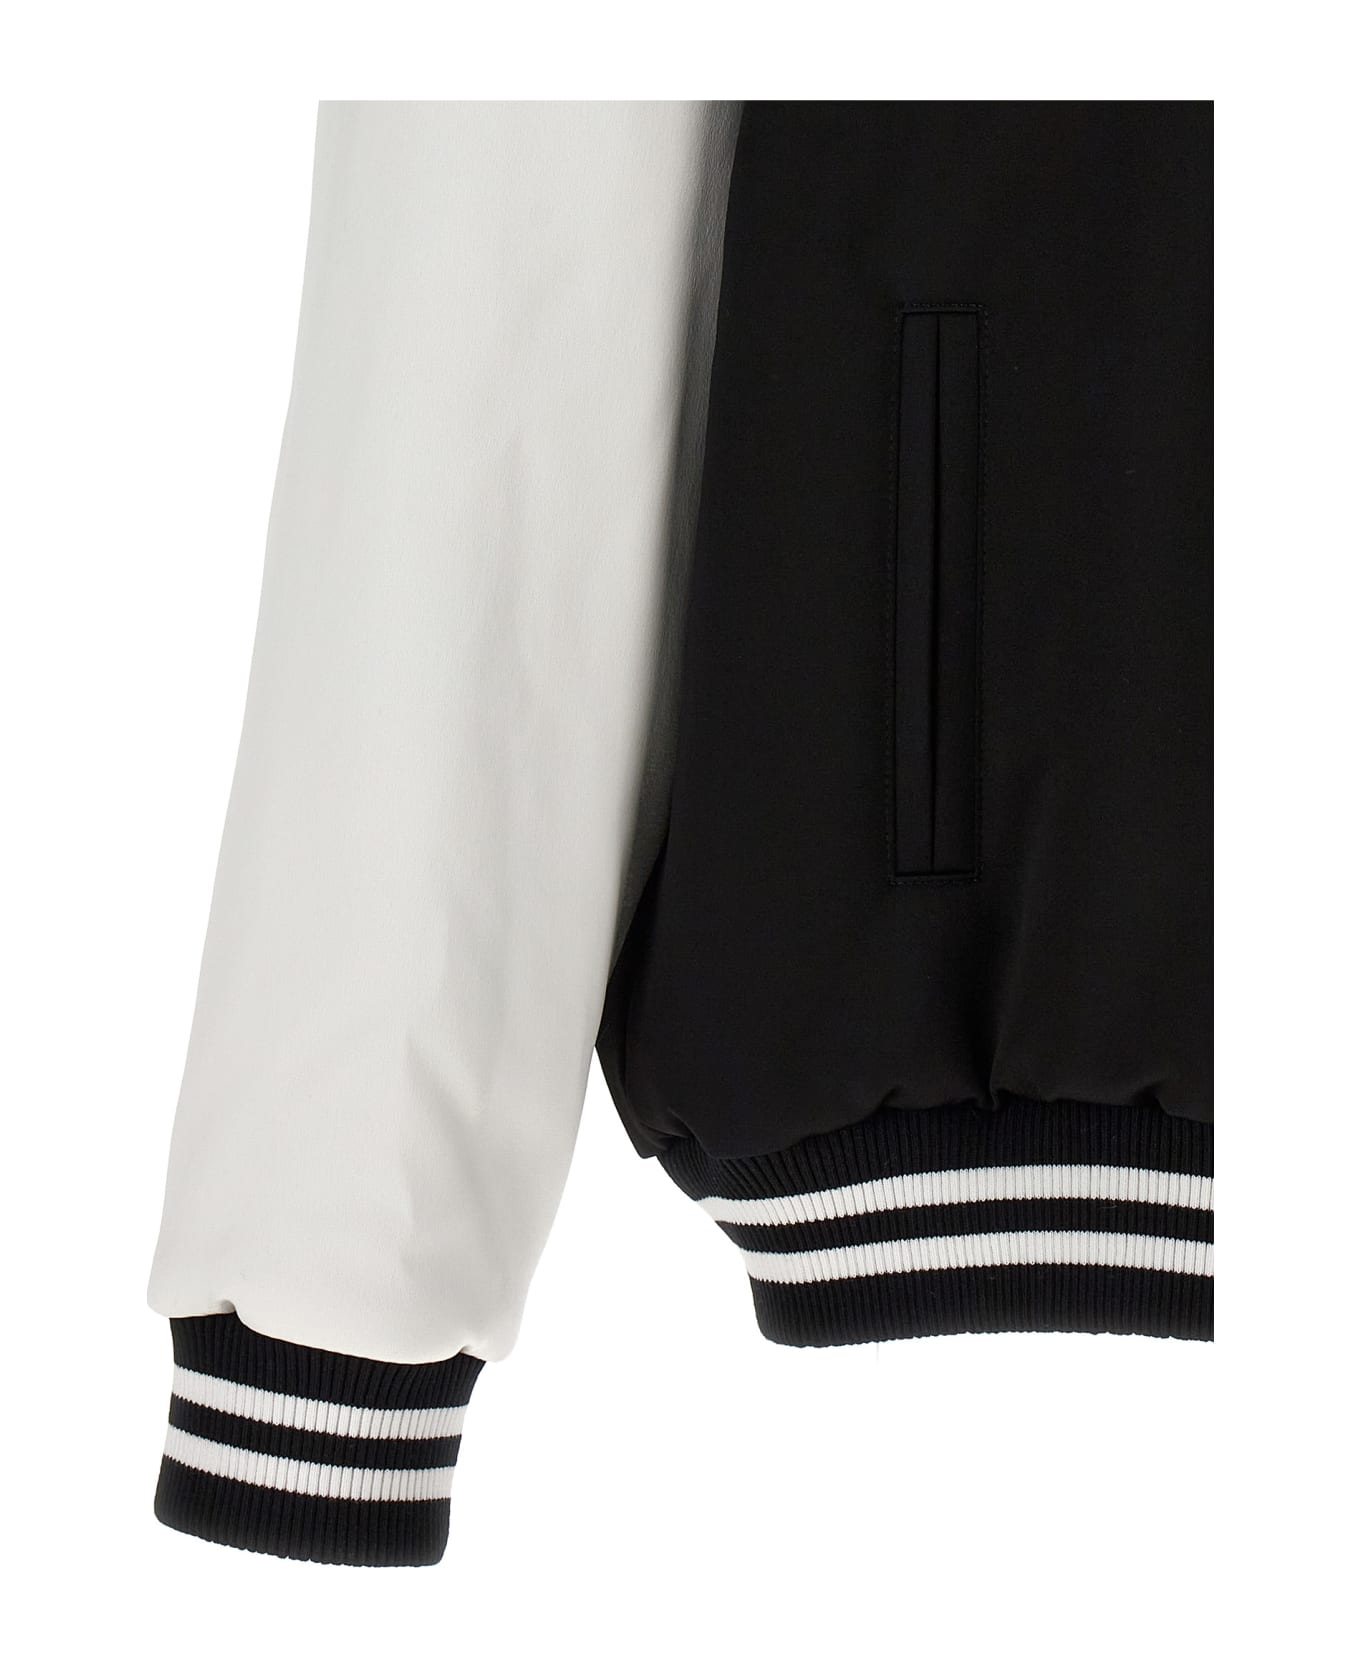 Balmain 'embroidered Badges Satined Varsity' Bomber Jacket - White/Black